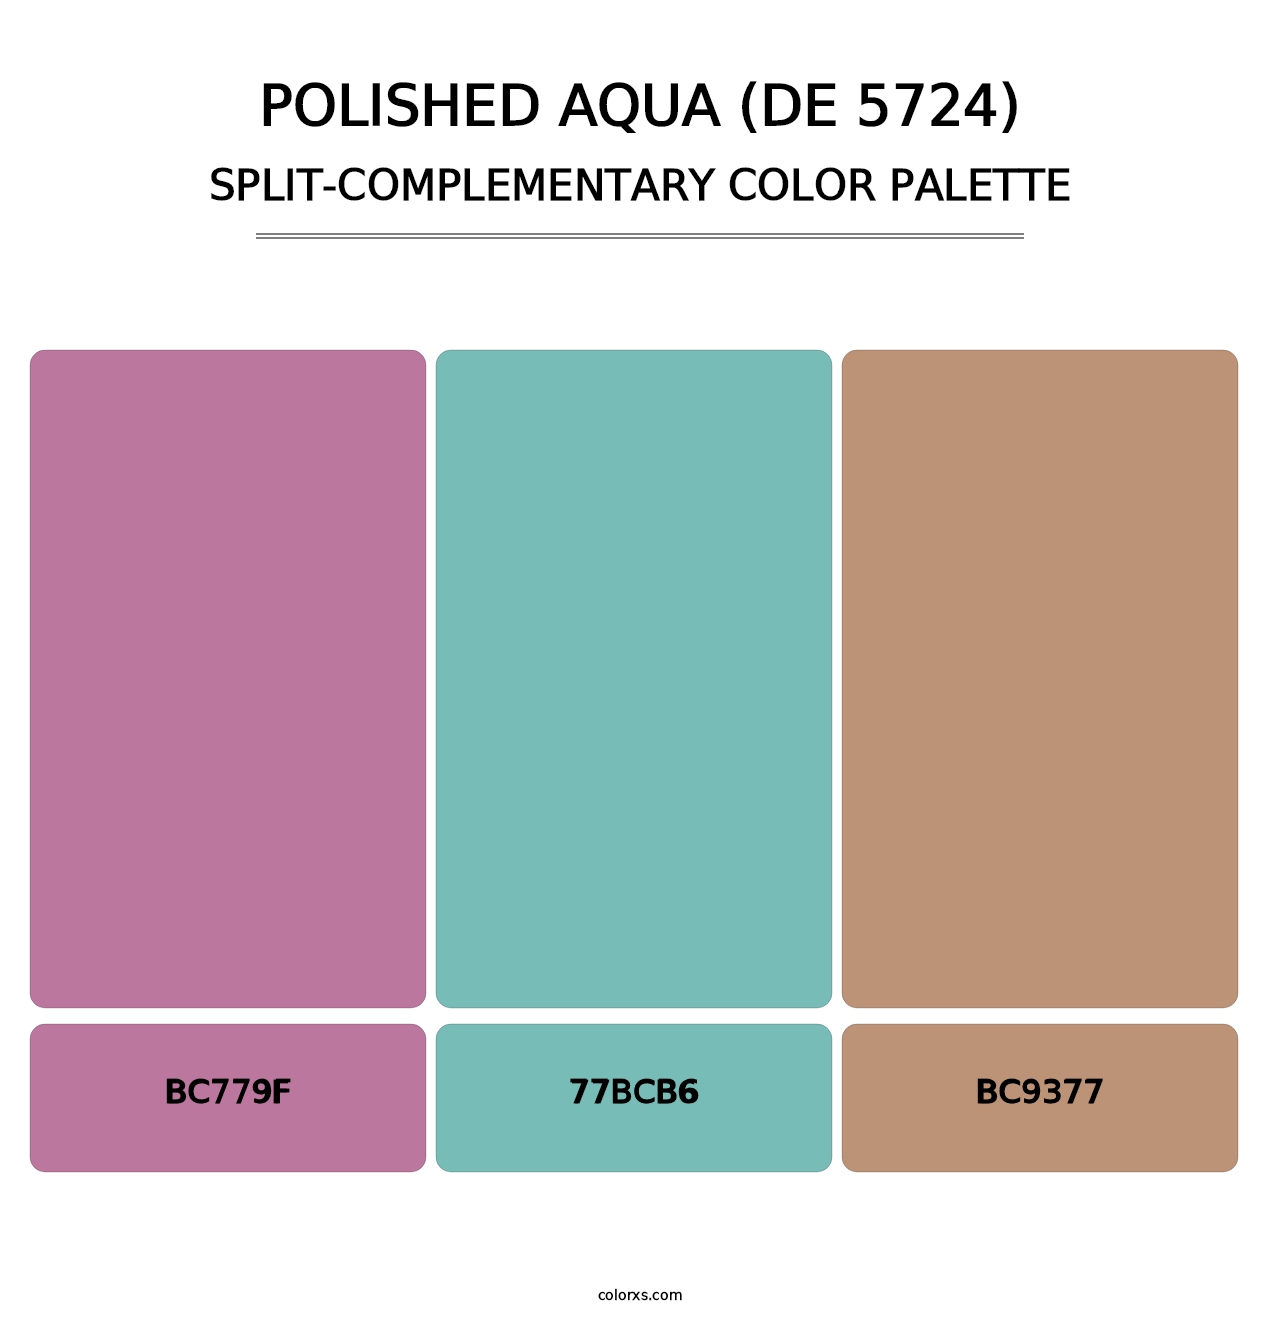 Polished Aqua (DE 5724) - Split-Complementary Color Palette